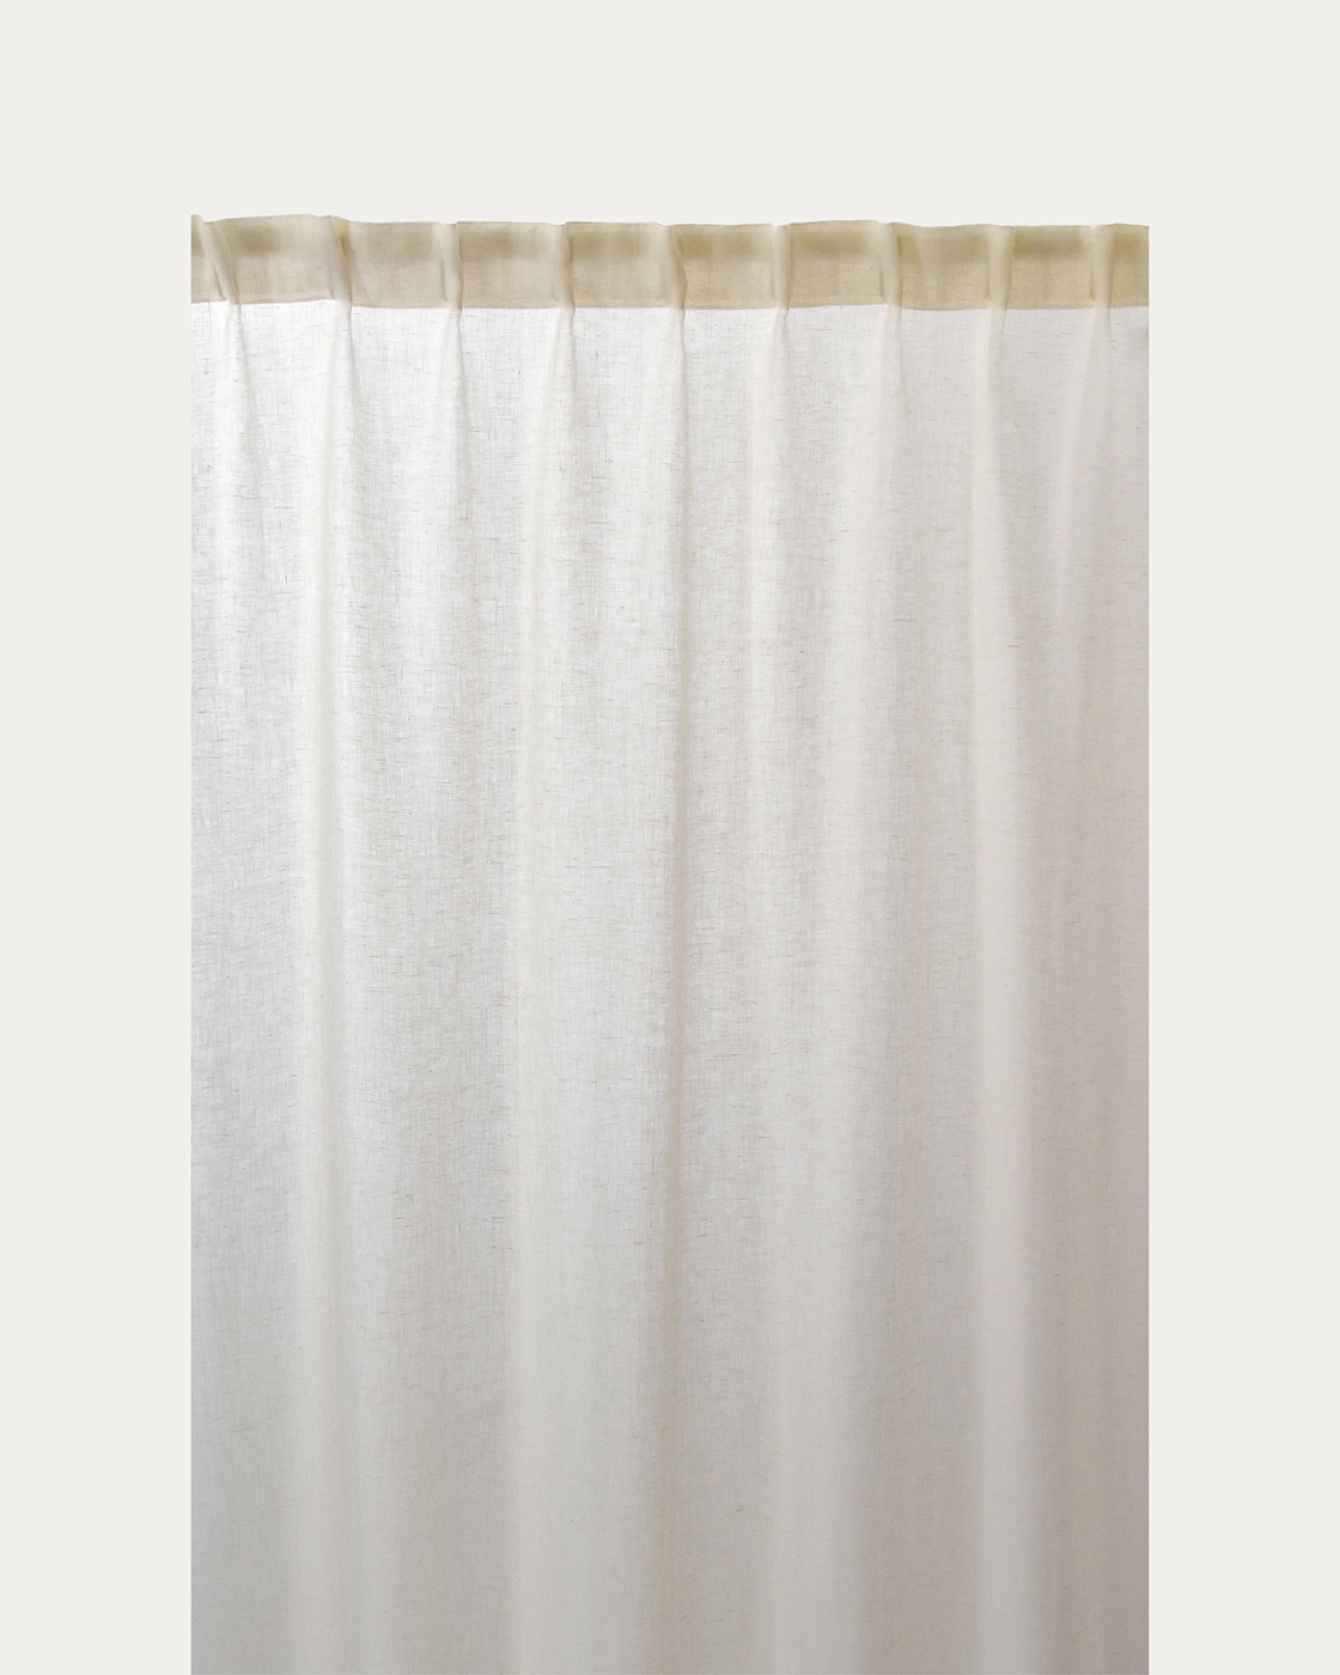 Image du produit rideau INTERMEZZO creme en lin transparent avec bande plissée finie de LINUM DESIGN. Taille 140 x 290 cm et vendu en lot de 2.